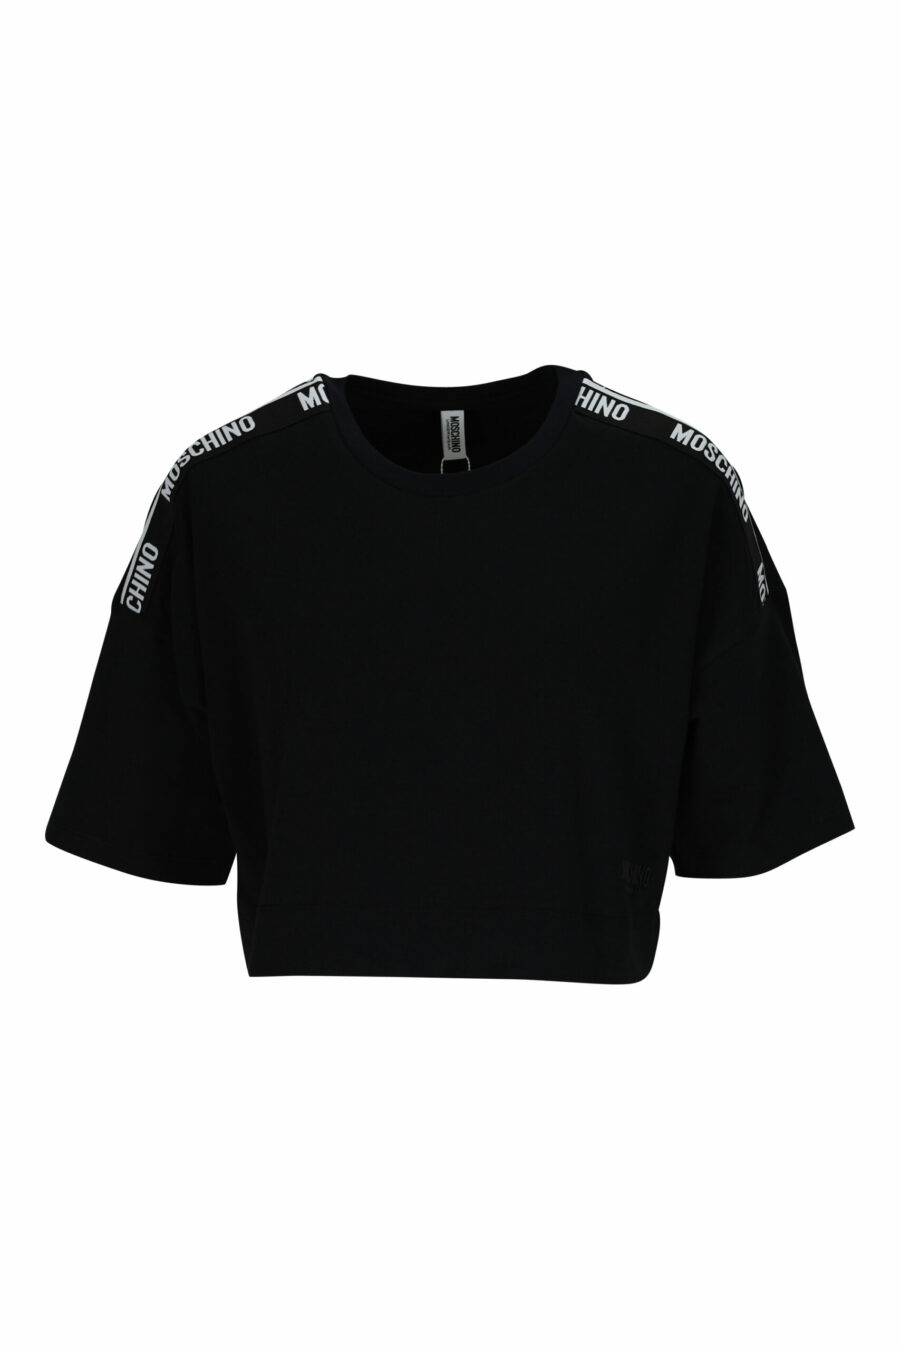 Camiseta negra corta con logo en cinta hombros blanco - 667113696454 scaled